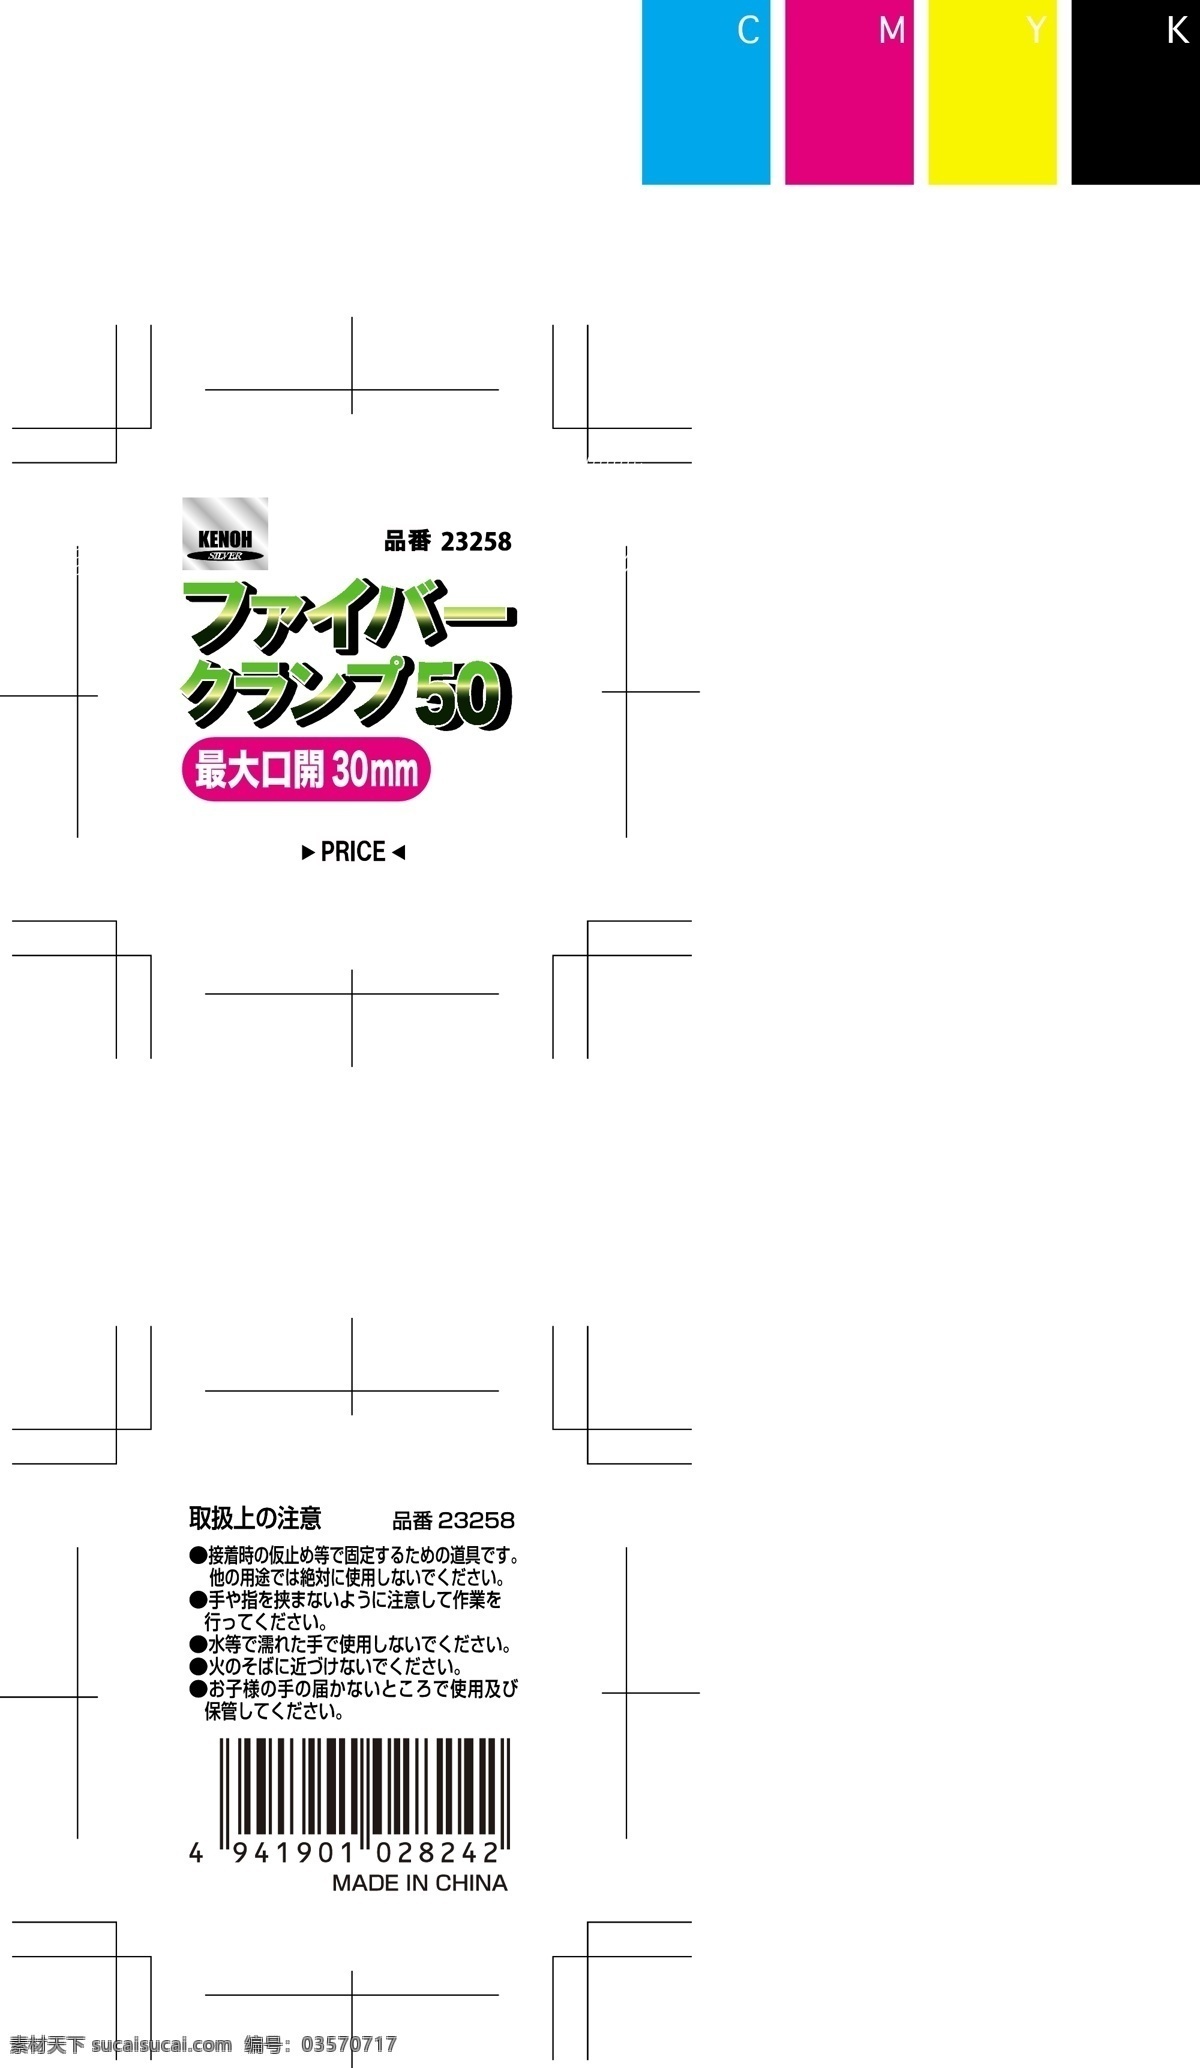 日本企业 文化 纸板 高清 版面设计背景 背景图片 高清图片素材 广告背景 模板设计 企业 企业文化 日本 设计素材 设计图 矢量图